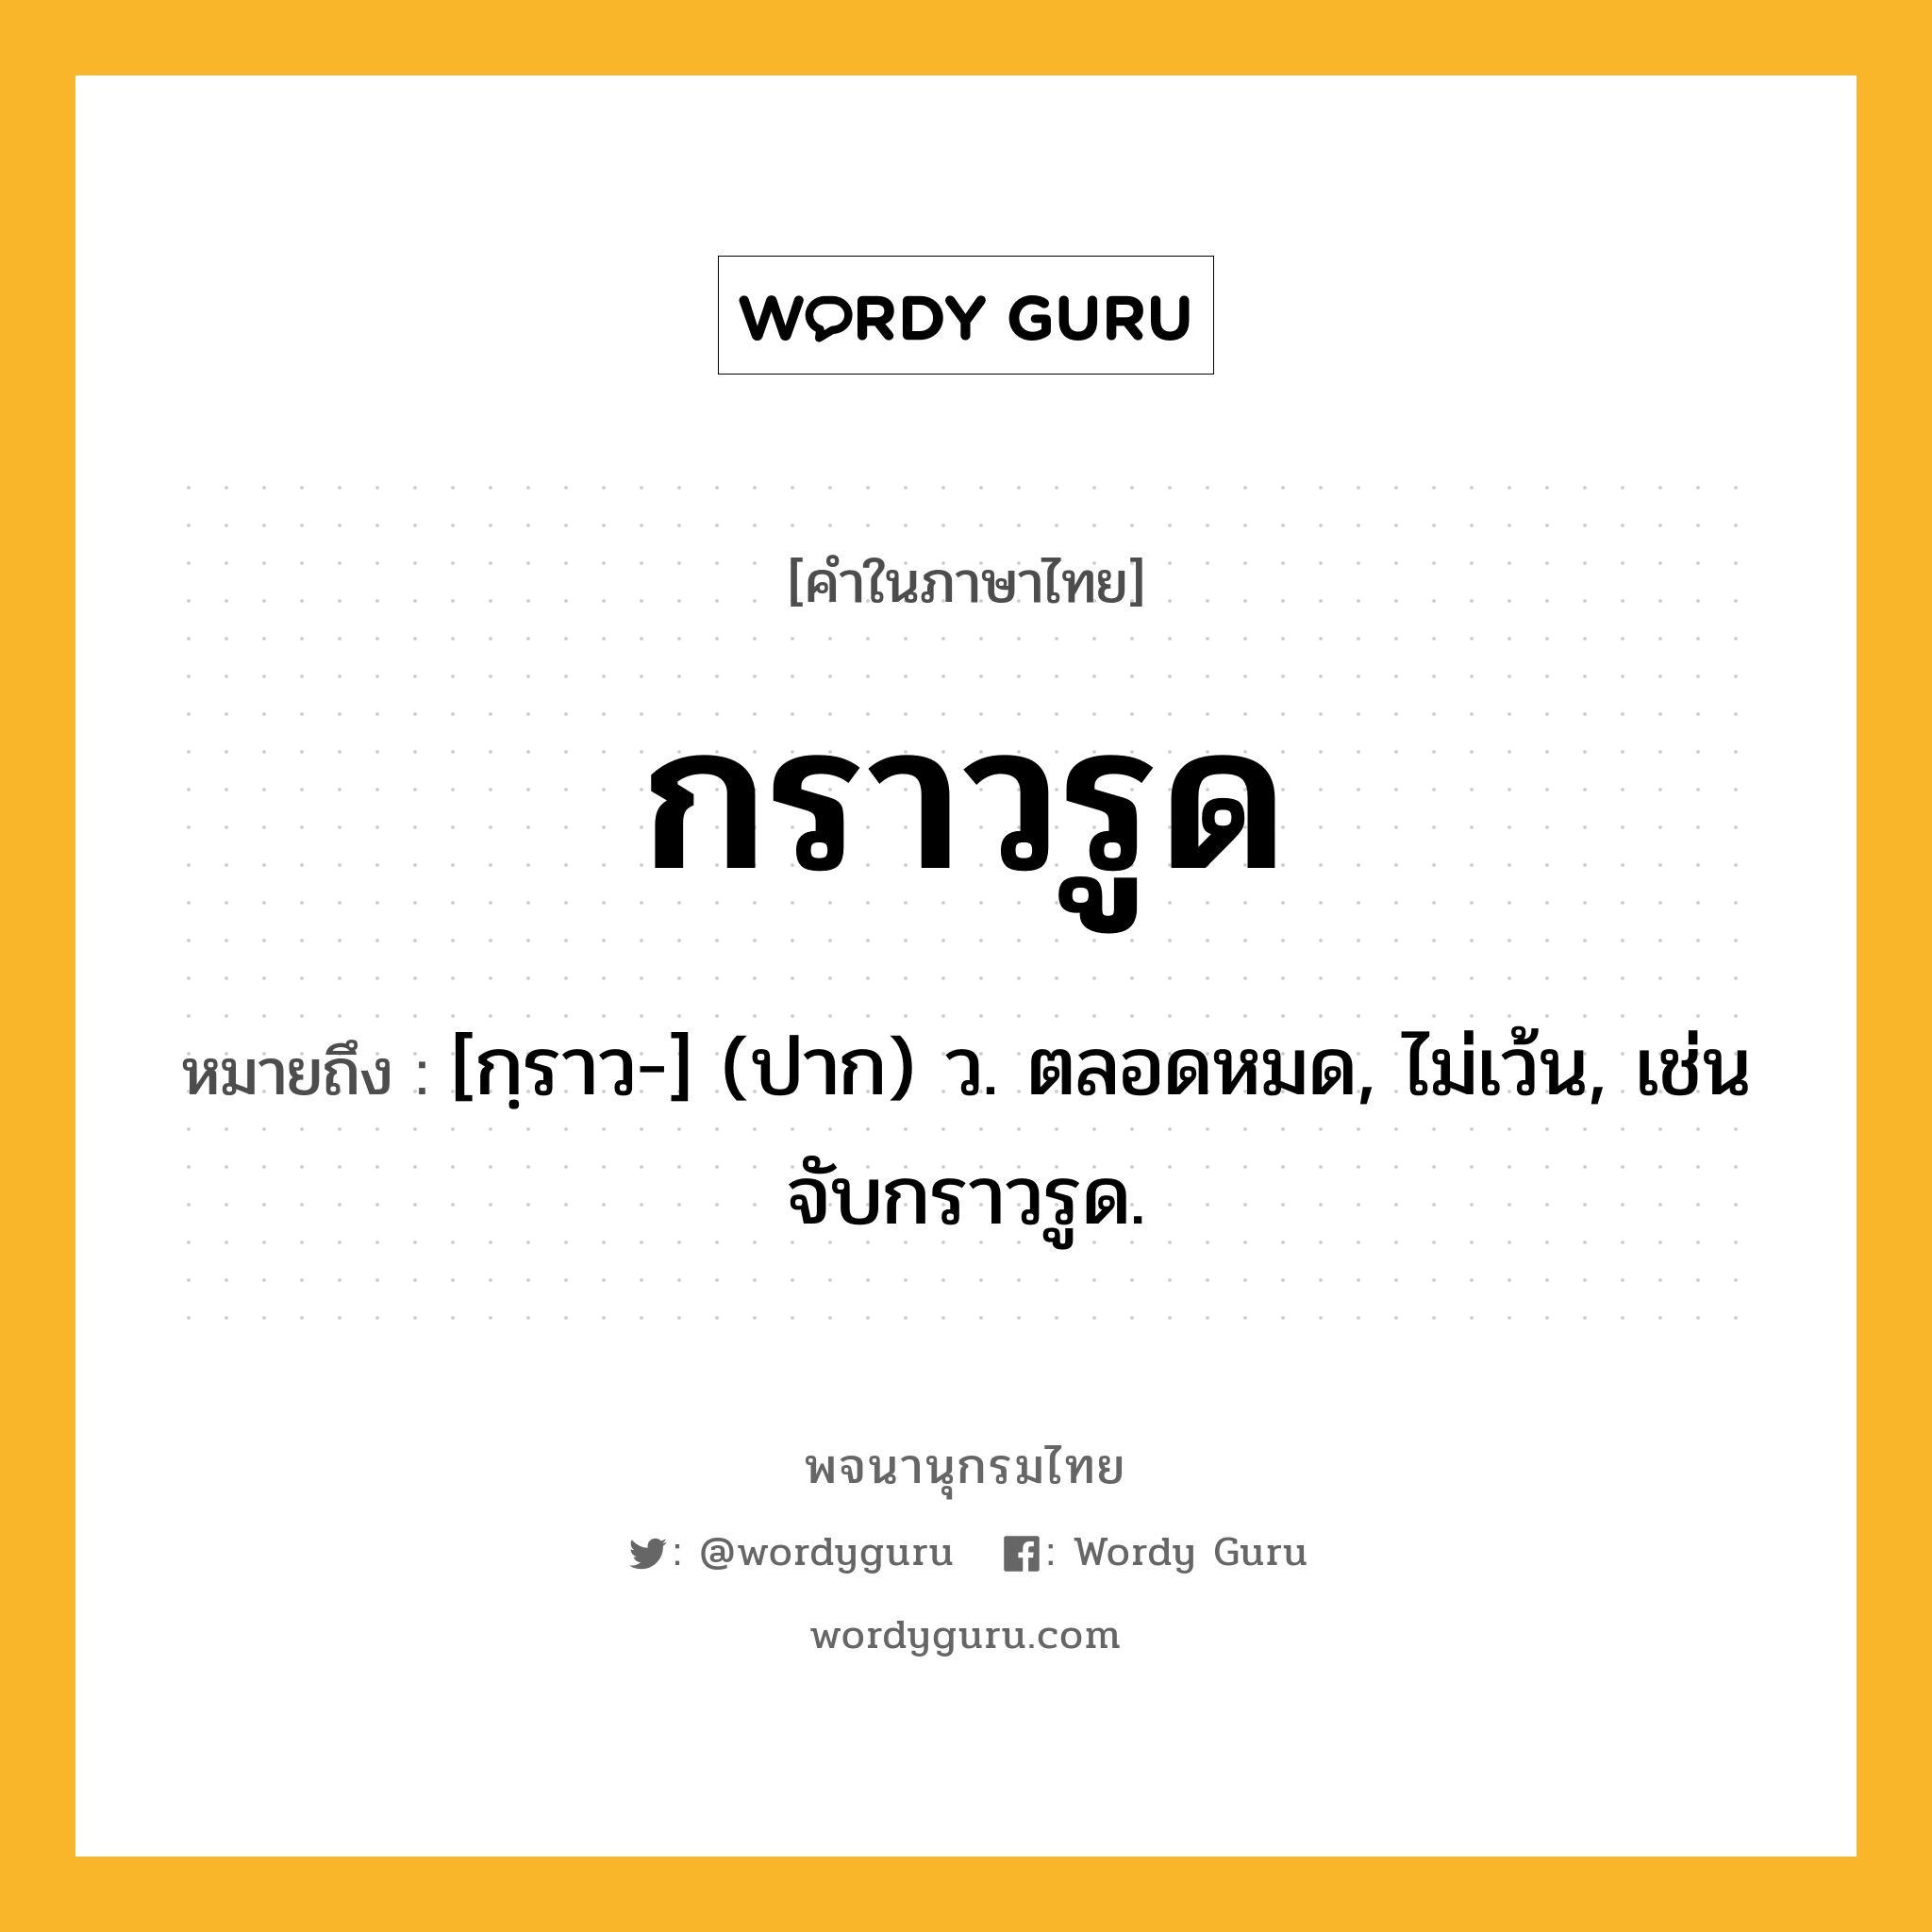 กราวรูด หมายถึงอะไร?, คำในภาษาไทย กราวรูด หมายถึง [กฺราว-] (ปาก) ว. ตลอดหมด, ไม่เว้น, เช่น จับกราวรูด.